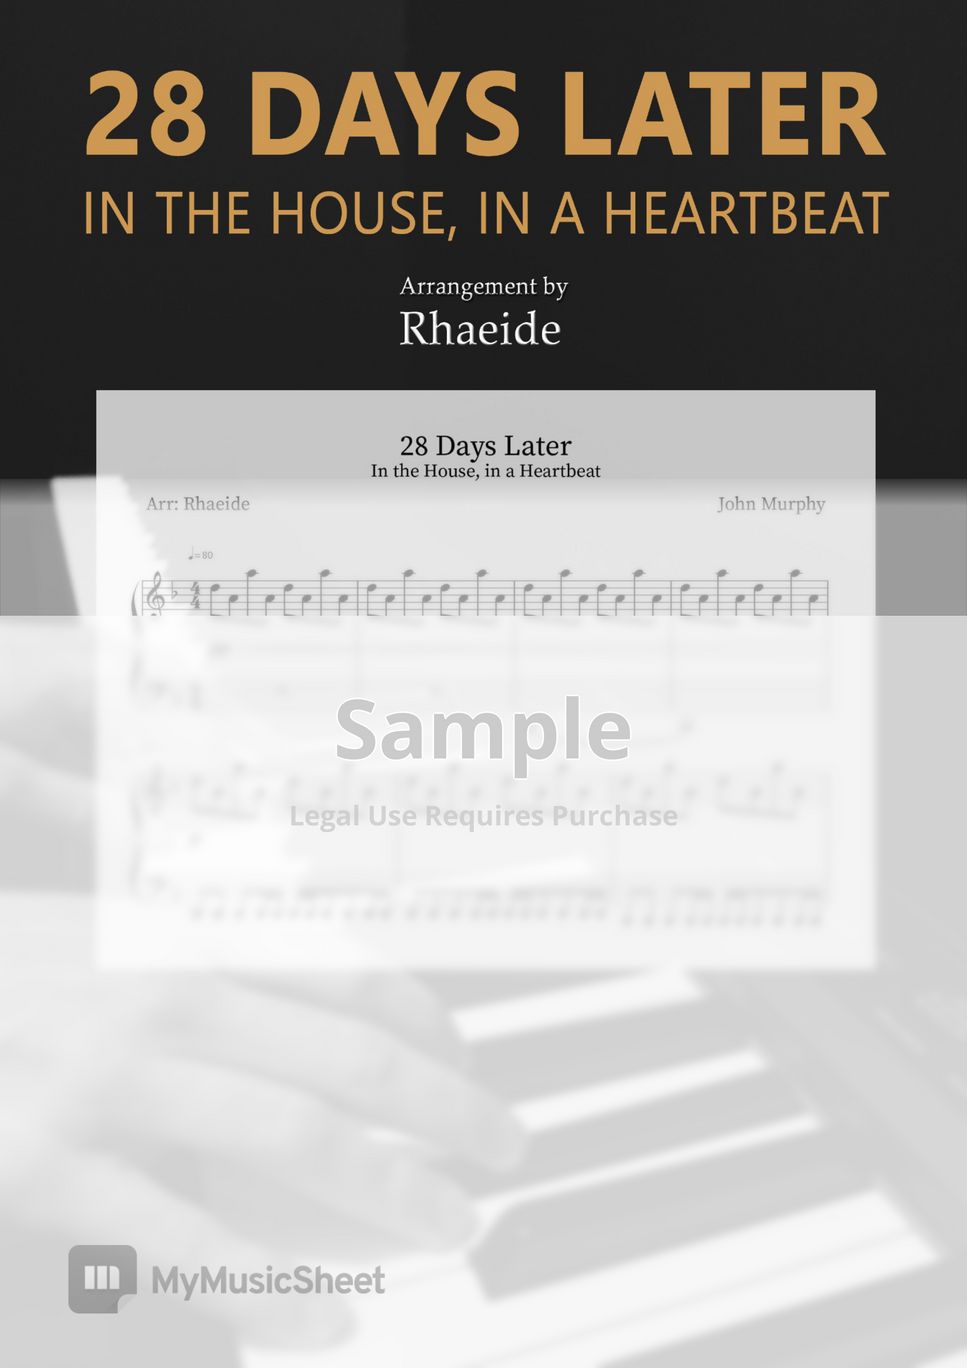 28 Days Later - In The House, In A Heartbeat (John Murphy) by Rhaeide